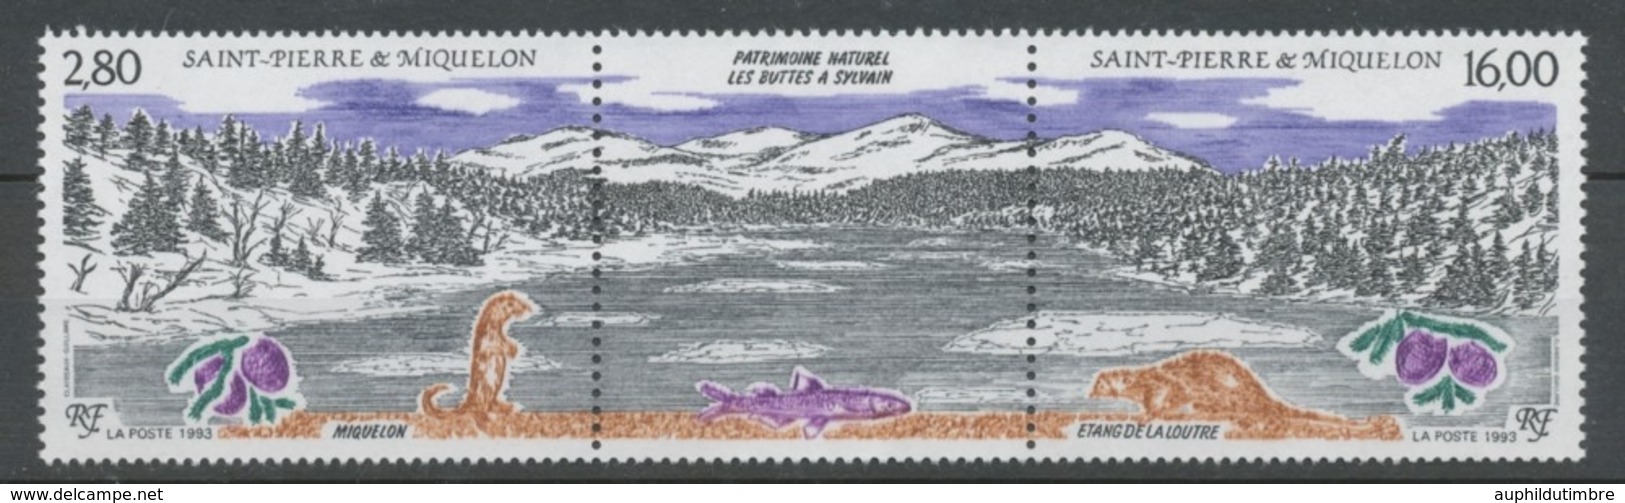 SPM  N°586A Patrimoine Naturel Des Iles St-Pierre-et-Miquelon Le Triptyque Avec Vignette Centrale ZC586A - Ongebruikt